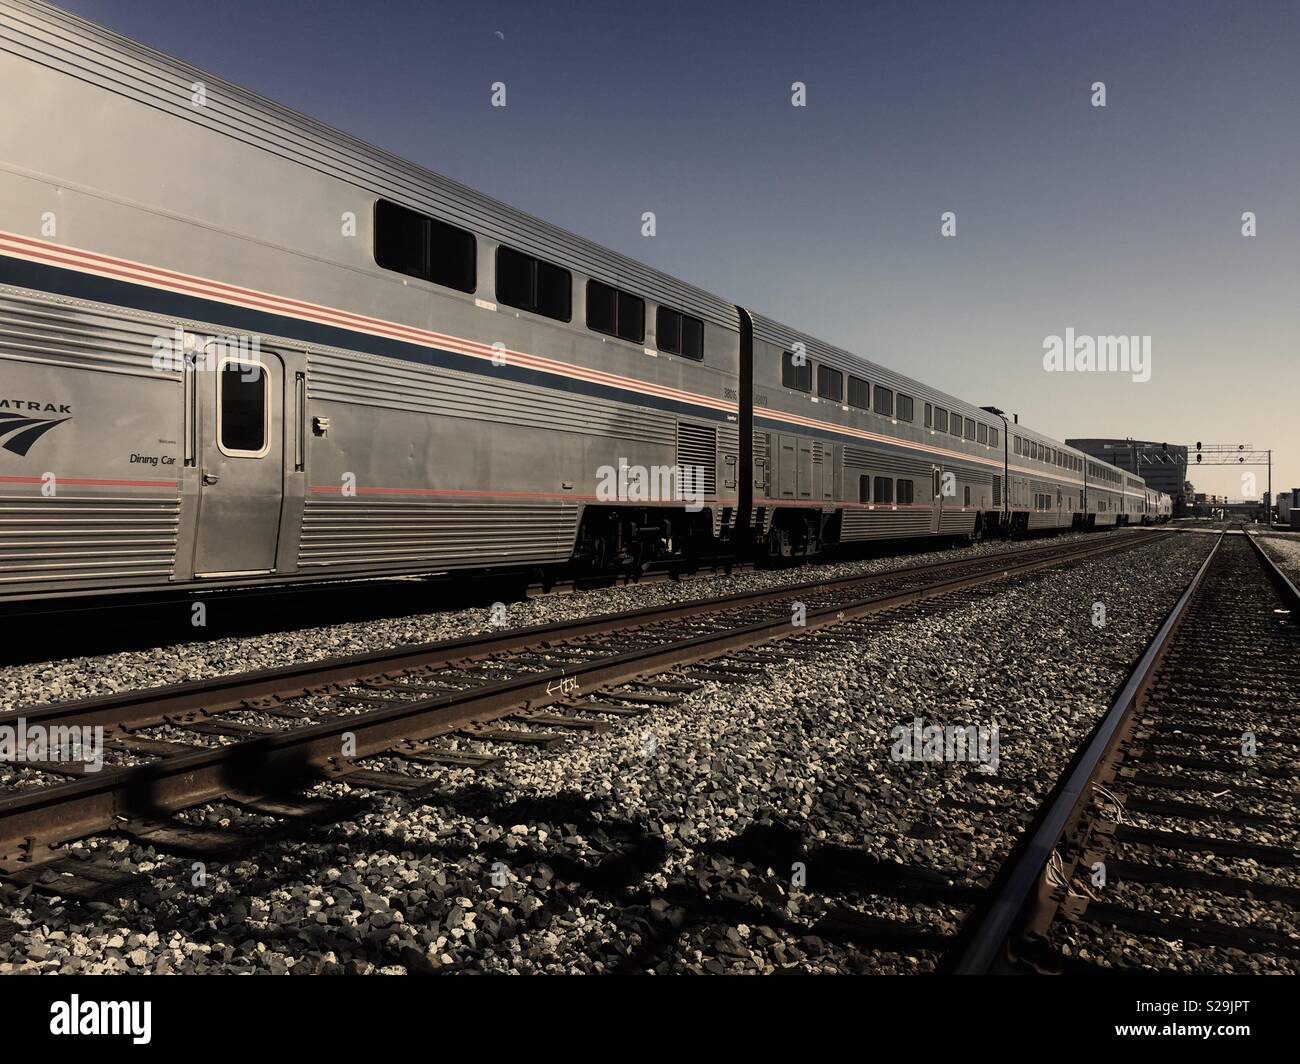 Longueur du train Amtrak de passagers du point de vue profond au point de fuite, à côté de voies ferrées vides. Emeryville, Californie. Banque D'Images